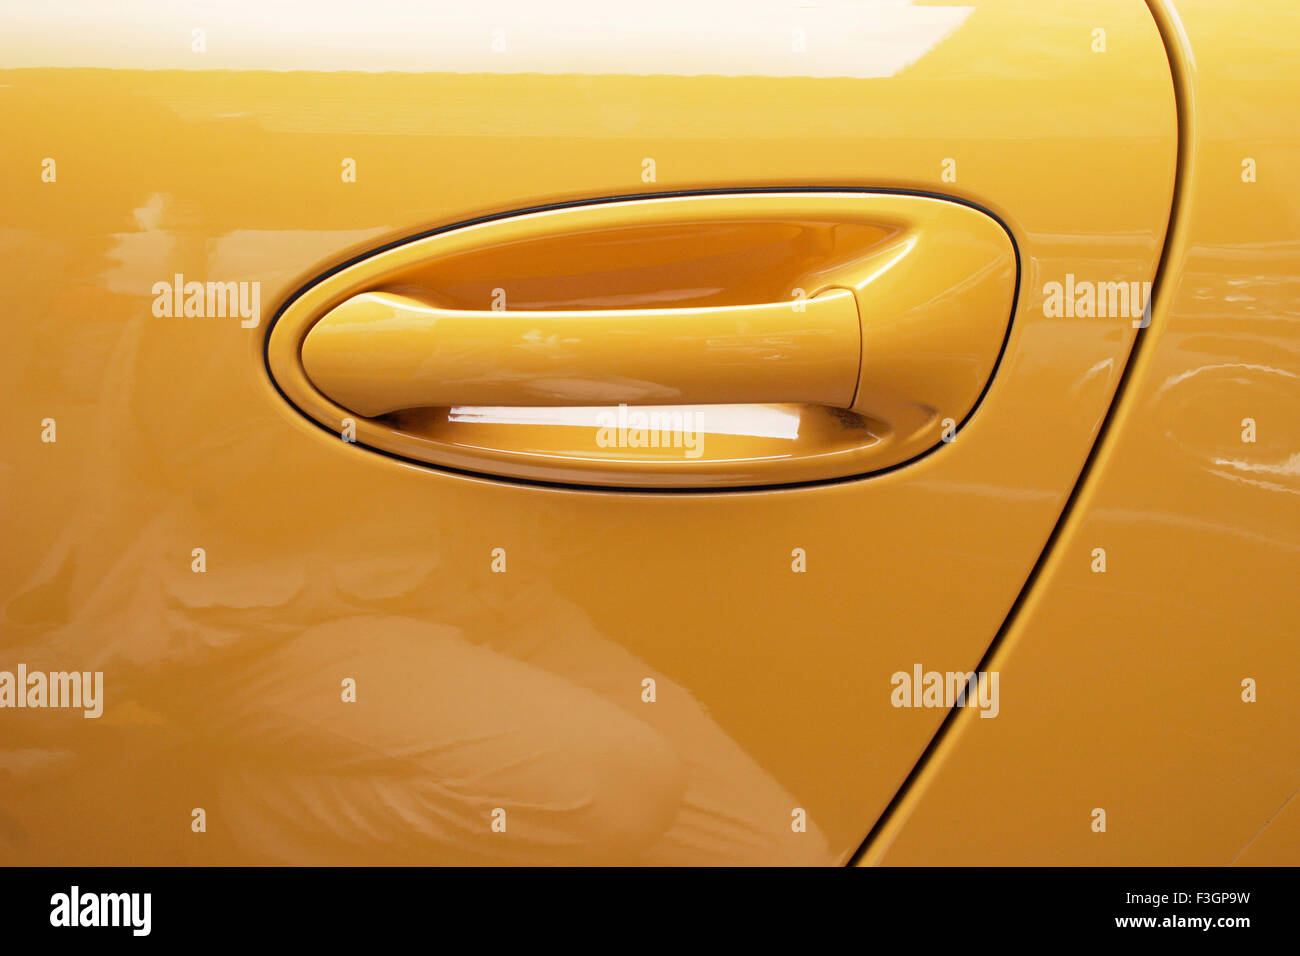 Graphique en forme de poignée de la nouvelle voiture de sport Porsche de couleur jaune, donnant l'impression positive frais ; Pune Maharashtra ; Inde ; Banque D'Images